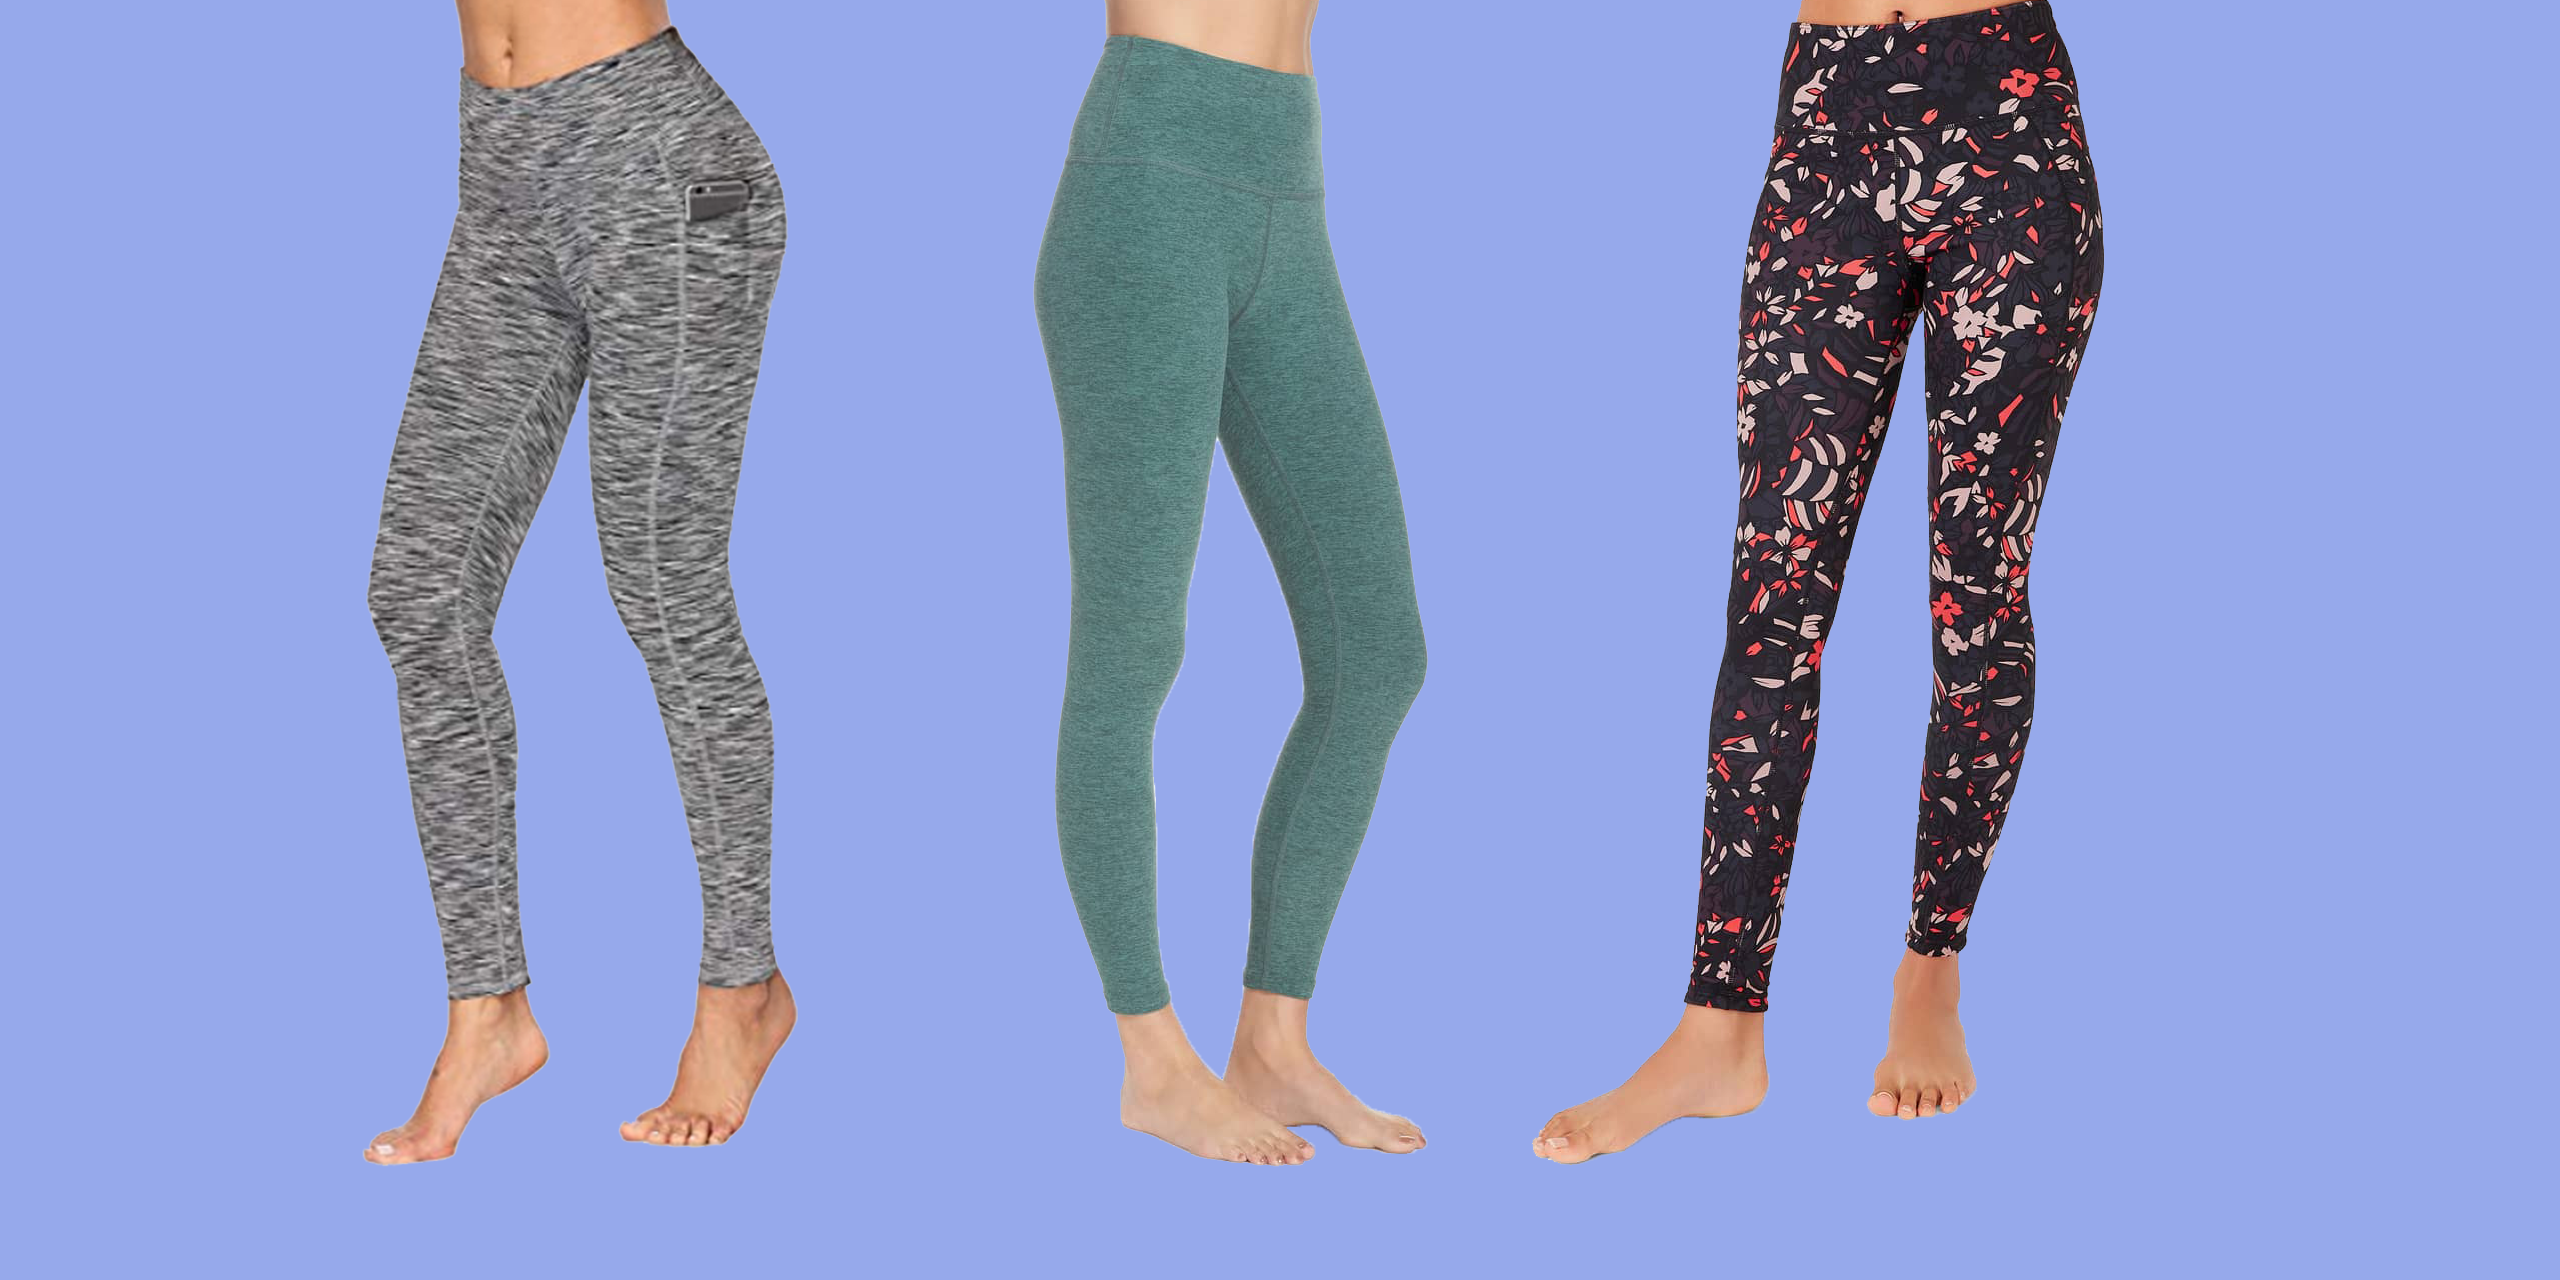 Yoga pants best materials